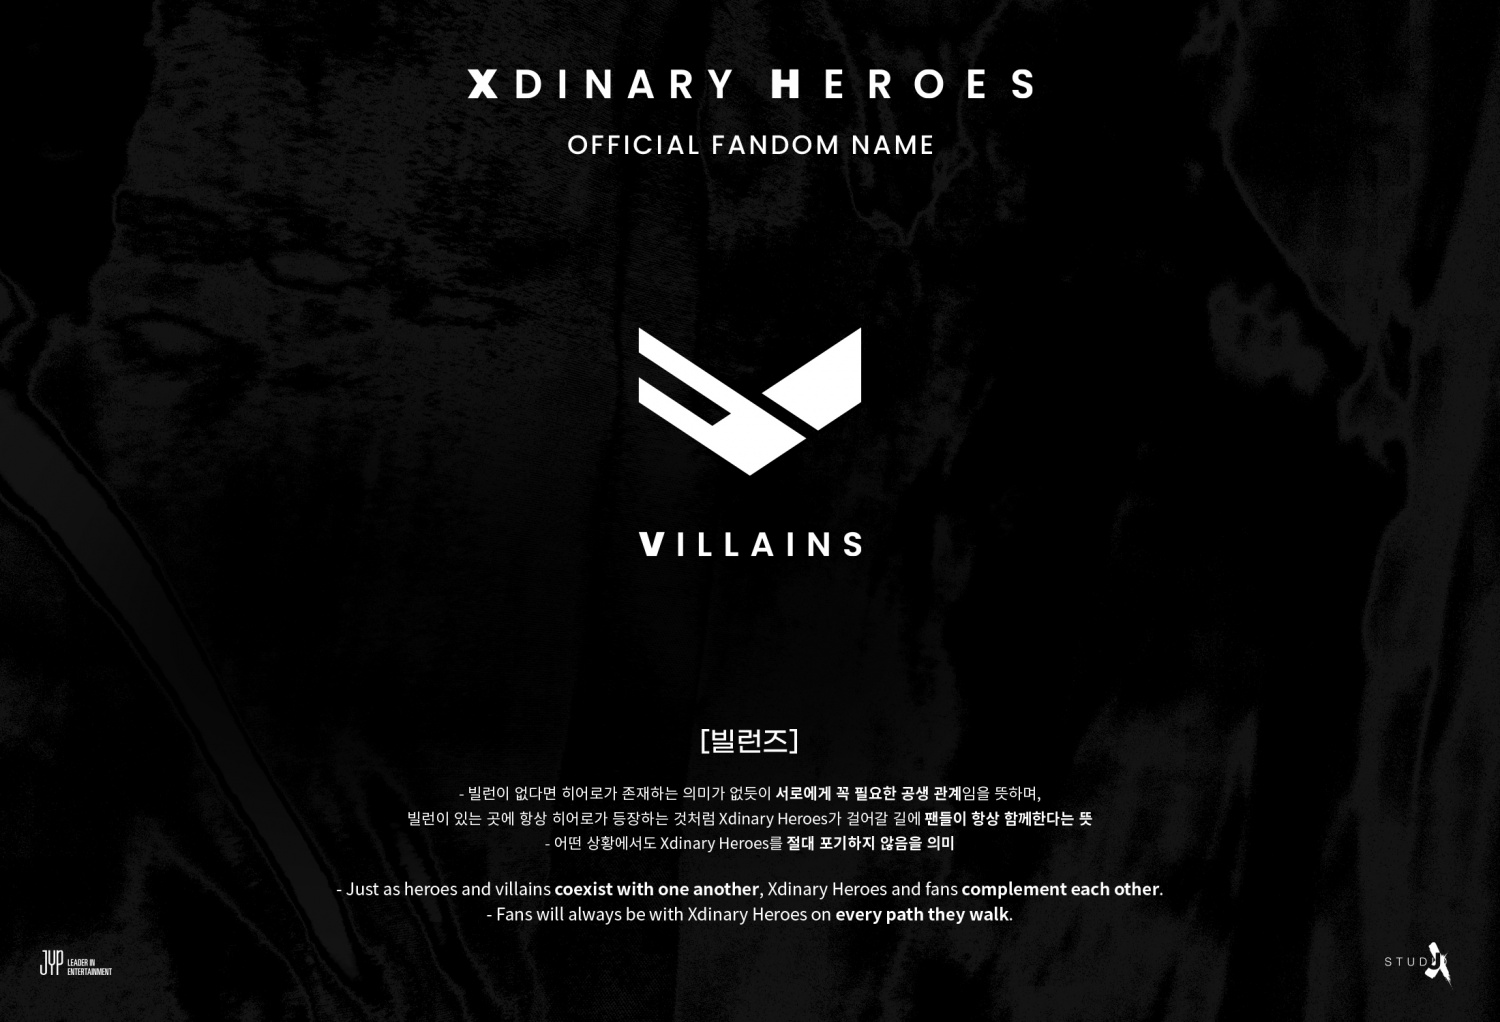 Xdinary Heroes объявили название фандома, и не всем фанатам оно нравится